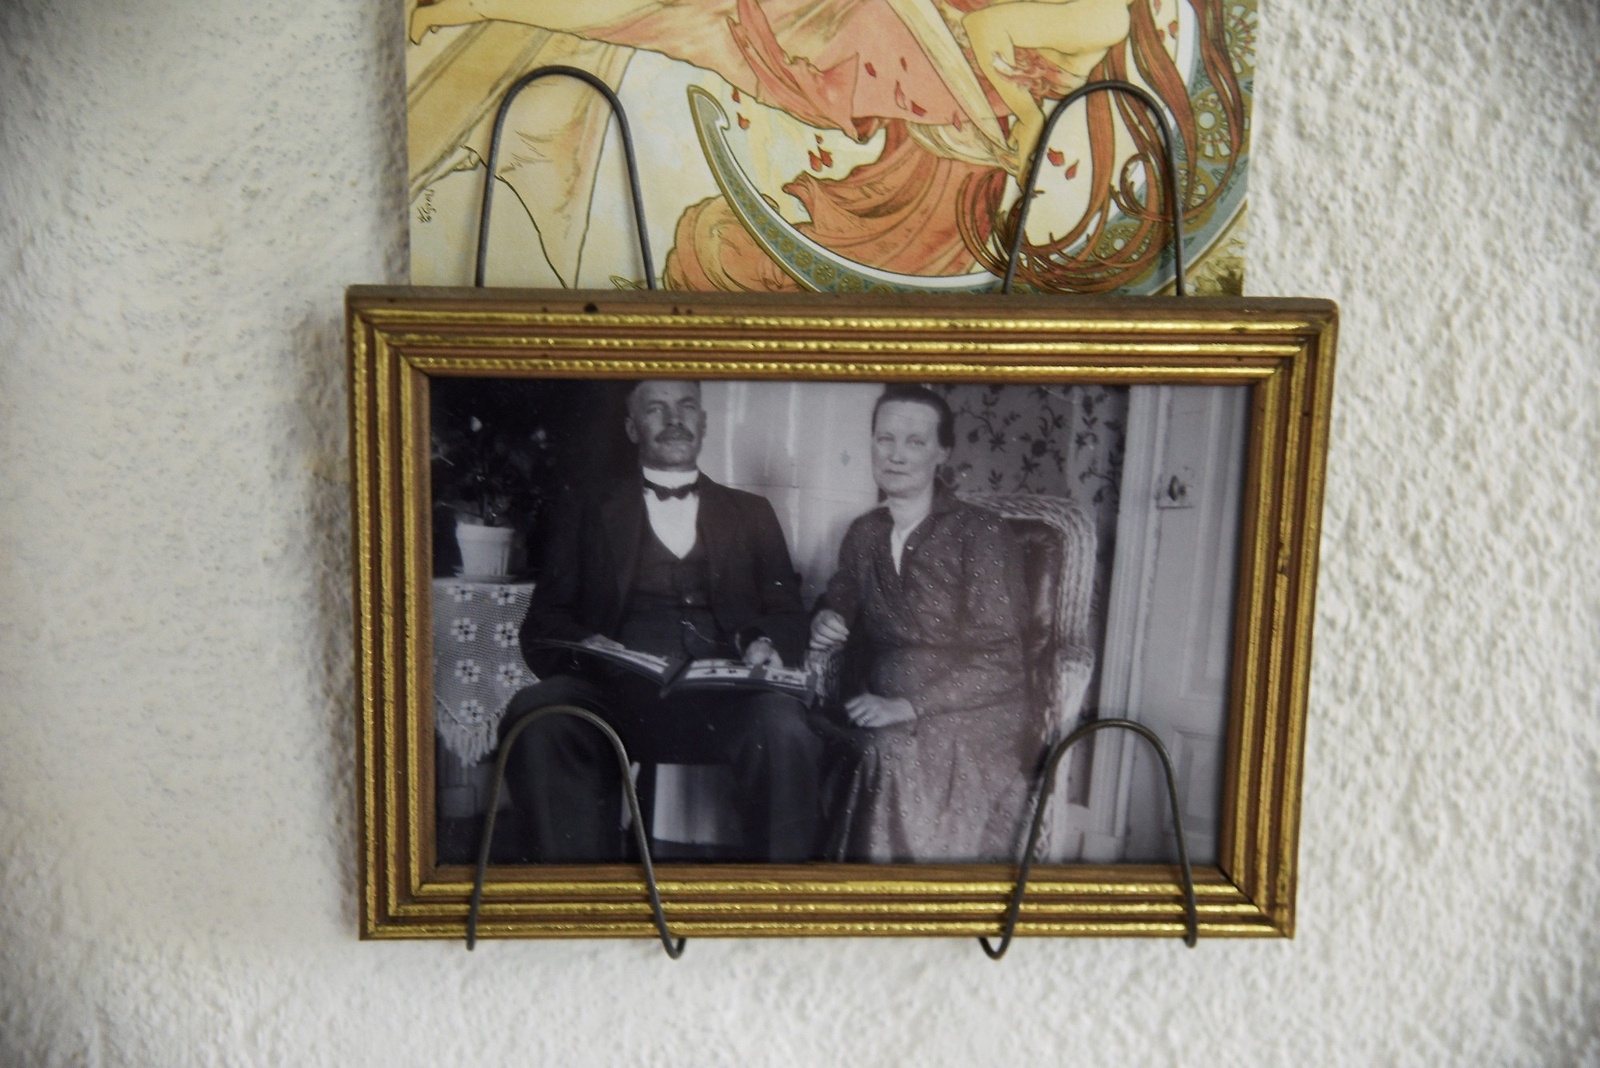 Katarina och Kalle byggde huset 1911. ”Grannarna kom med fotografier på dem som hade bott här innan och berättade vilka de var. Det betydde mycket”, säger Erika Åberg.
Foto: Lisa Wallström